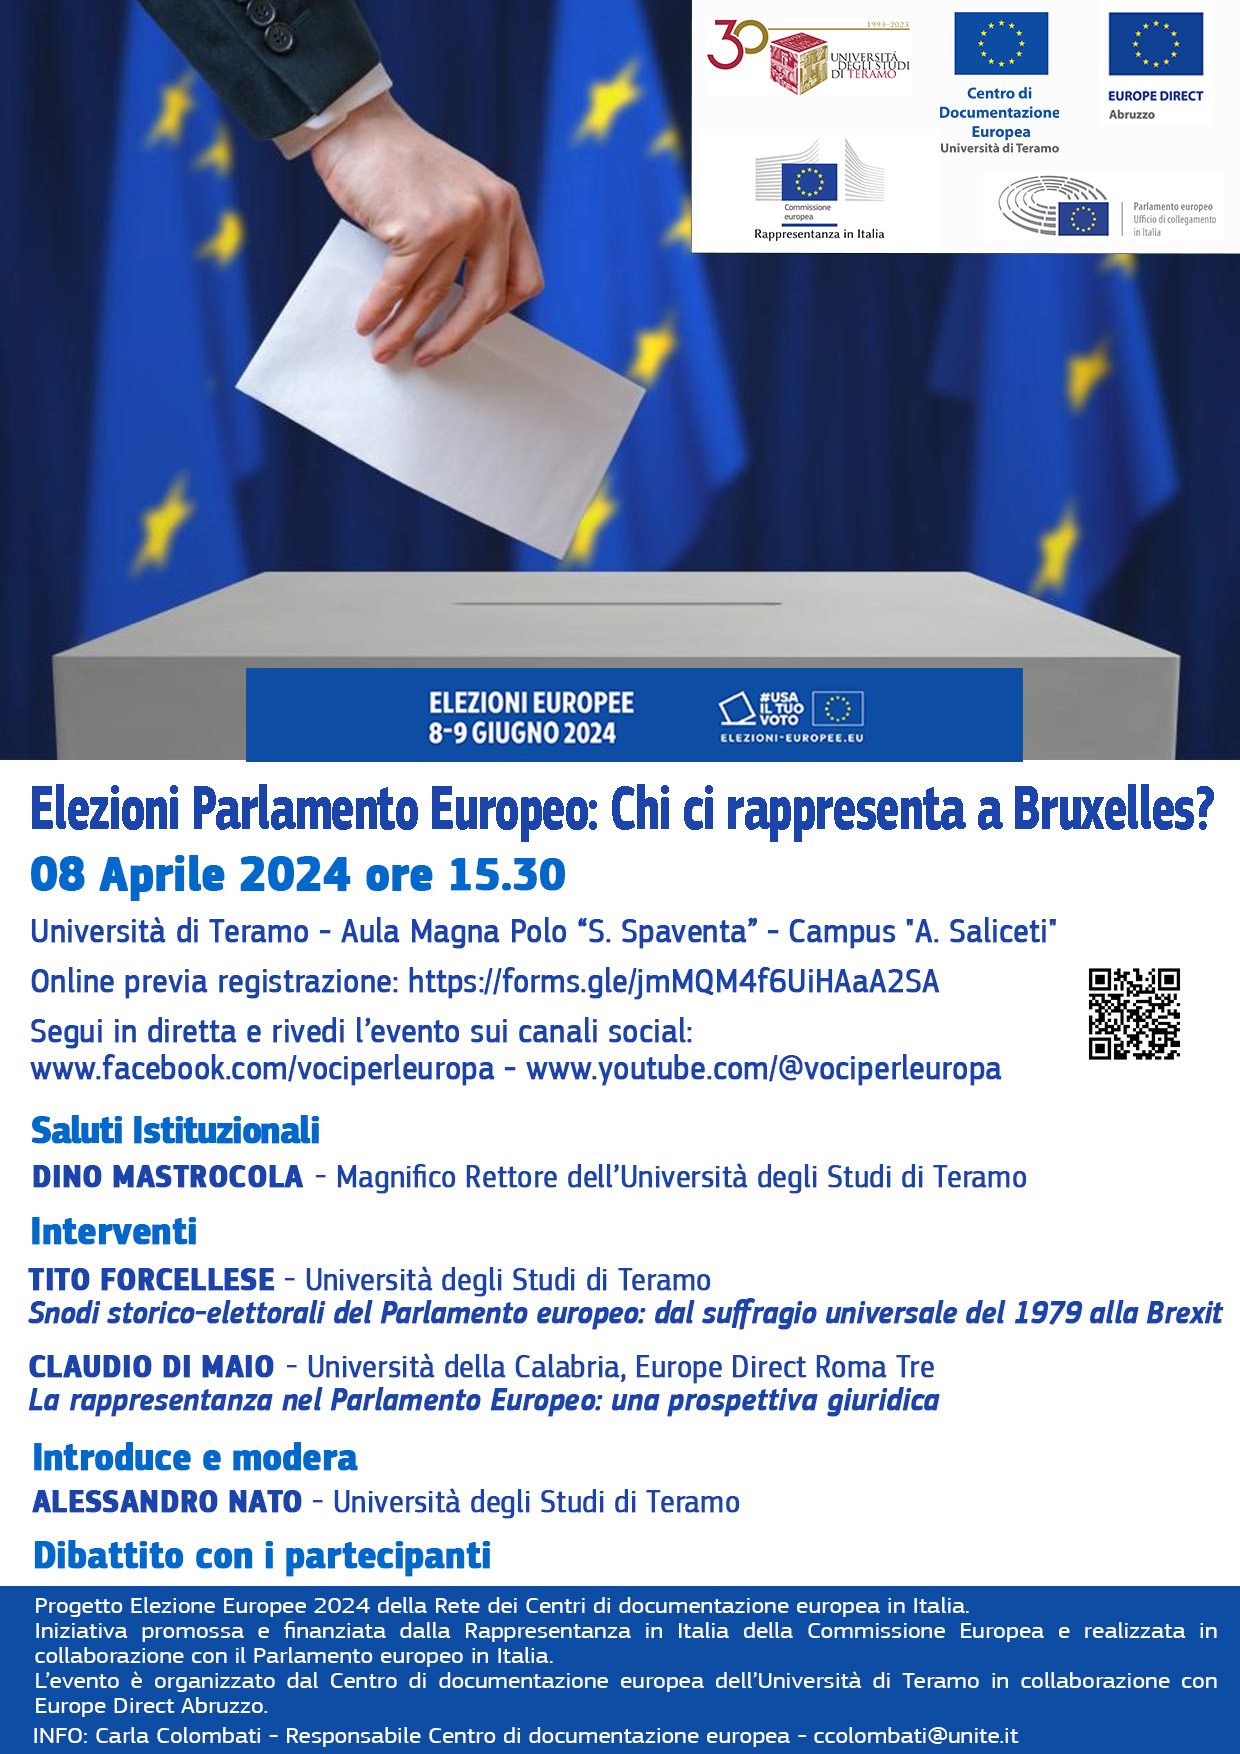 Centro di documentazione europea: Seminario e dibattito "Elezioni Parlamento Europeo: Chi ci rappresenta a Bruxelles?"